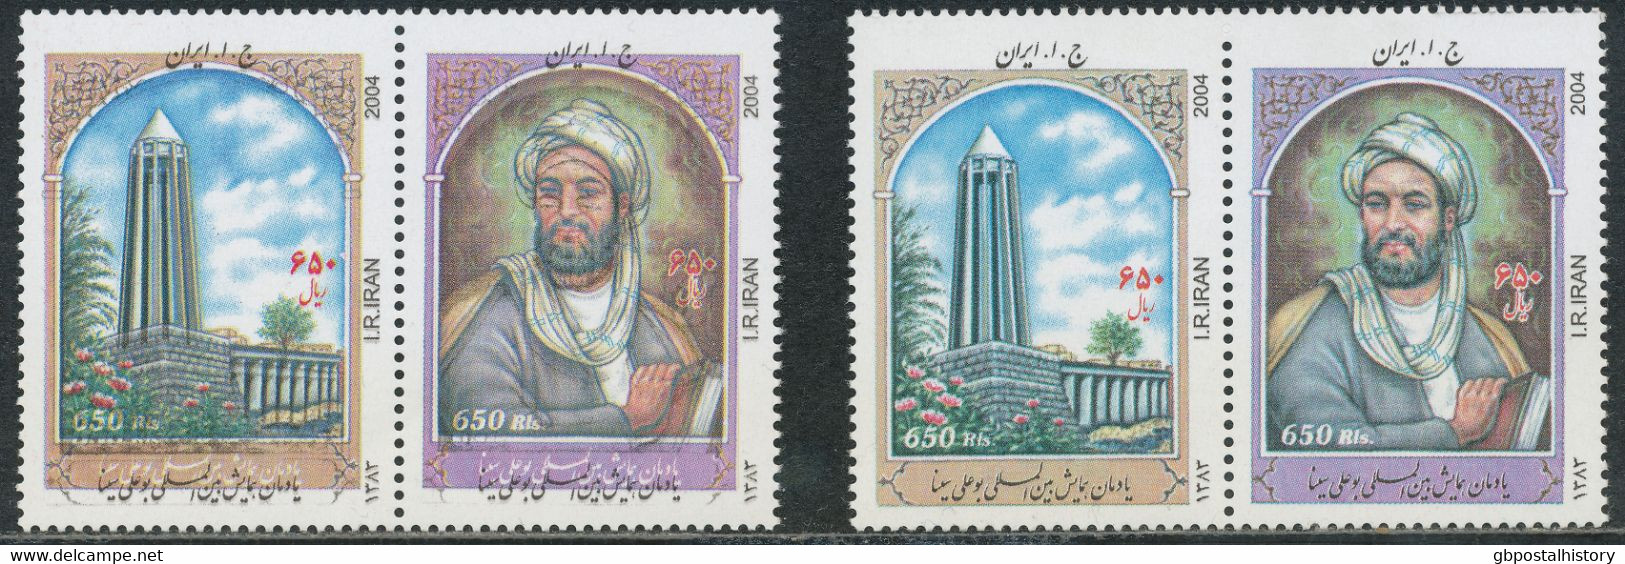 IRAN 2004, Weltkongreß über Avicenna, Hamadan - Persischer Philosoph Und Arzt, 650 R. Postfr. Kab.-Zusammendruck, ABART: - Irán